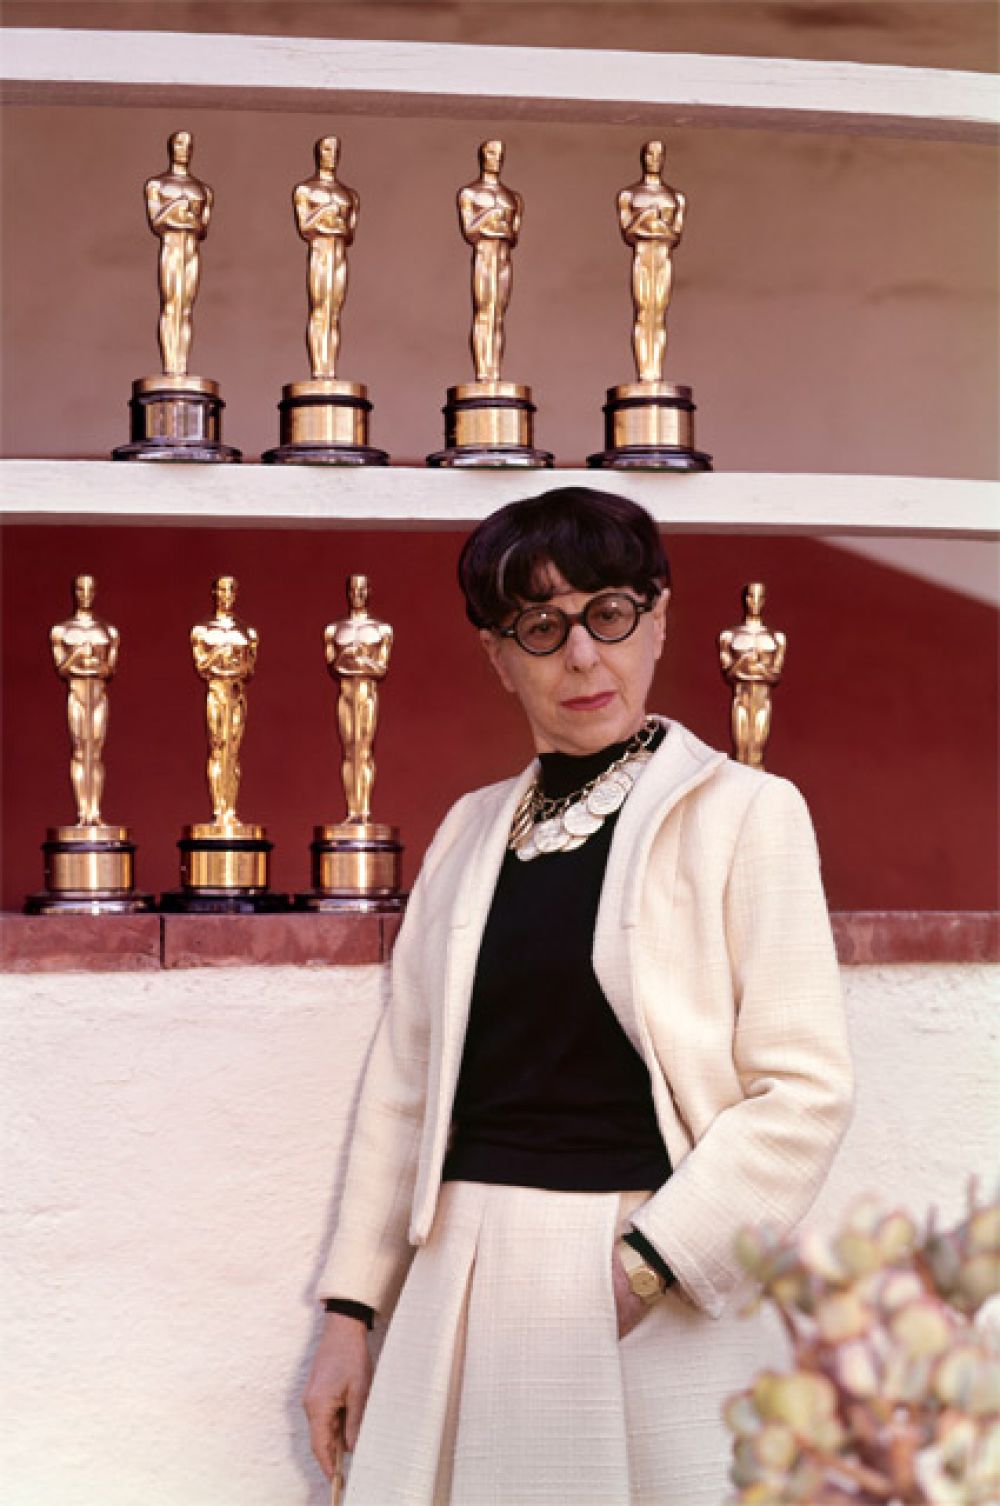 Наибольшее количество «Оскаров» (среди женщин): 8 наград у дизайнера костюмов Эдит Хэд.